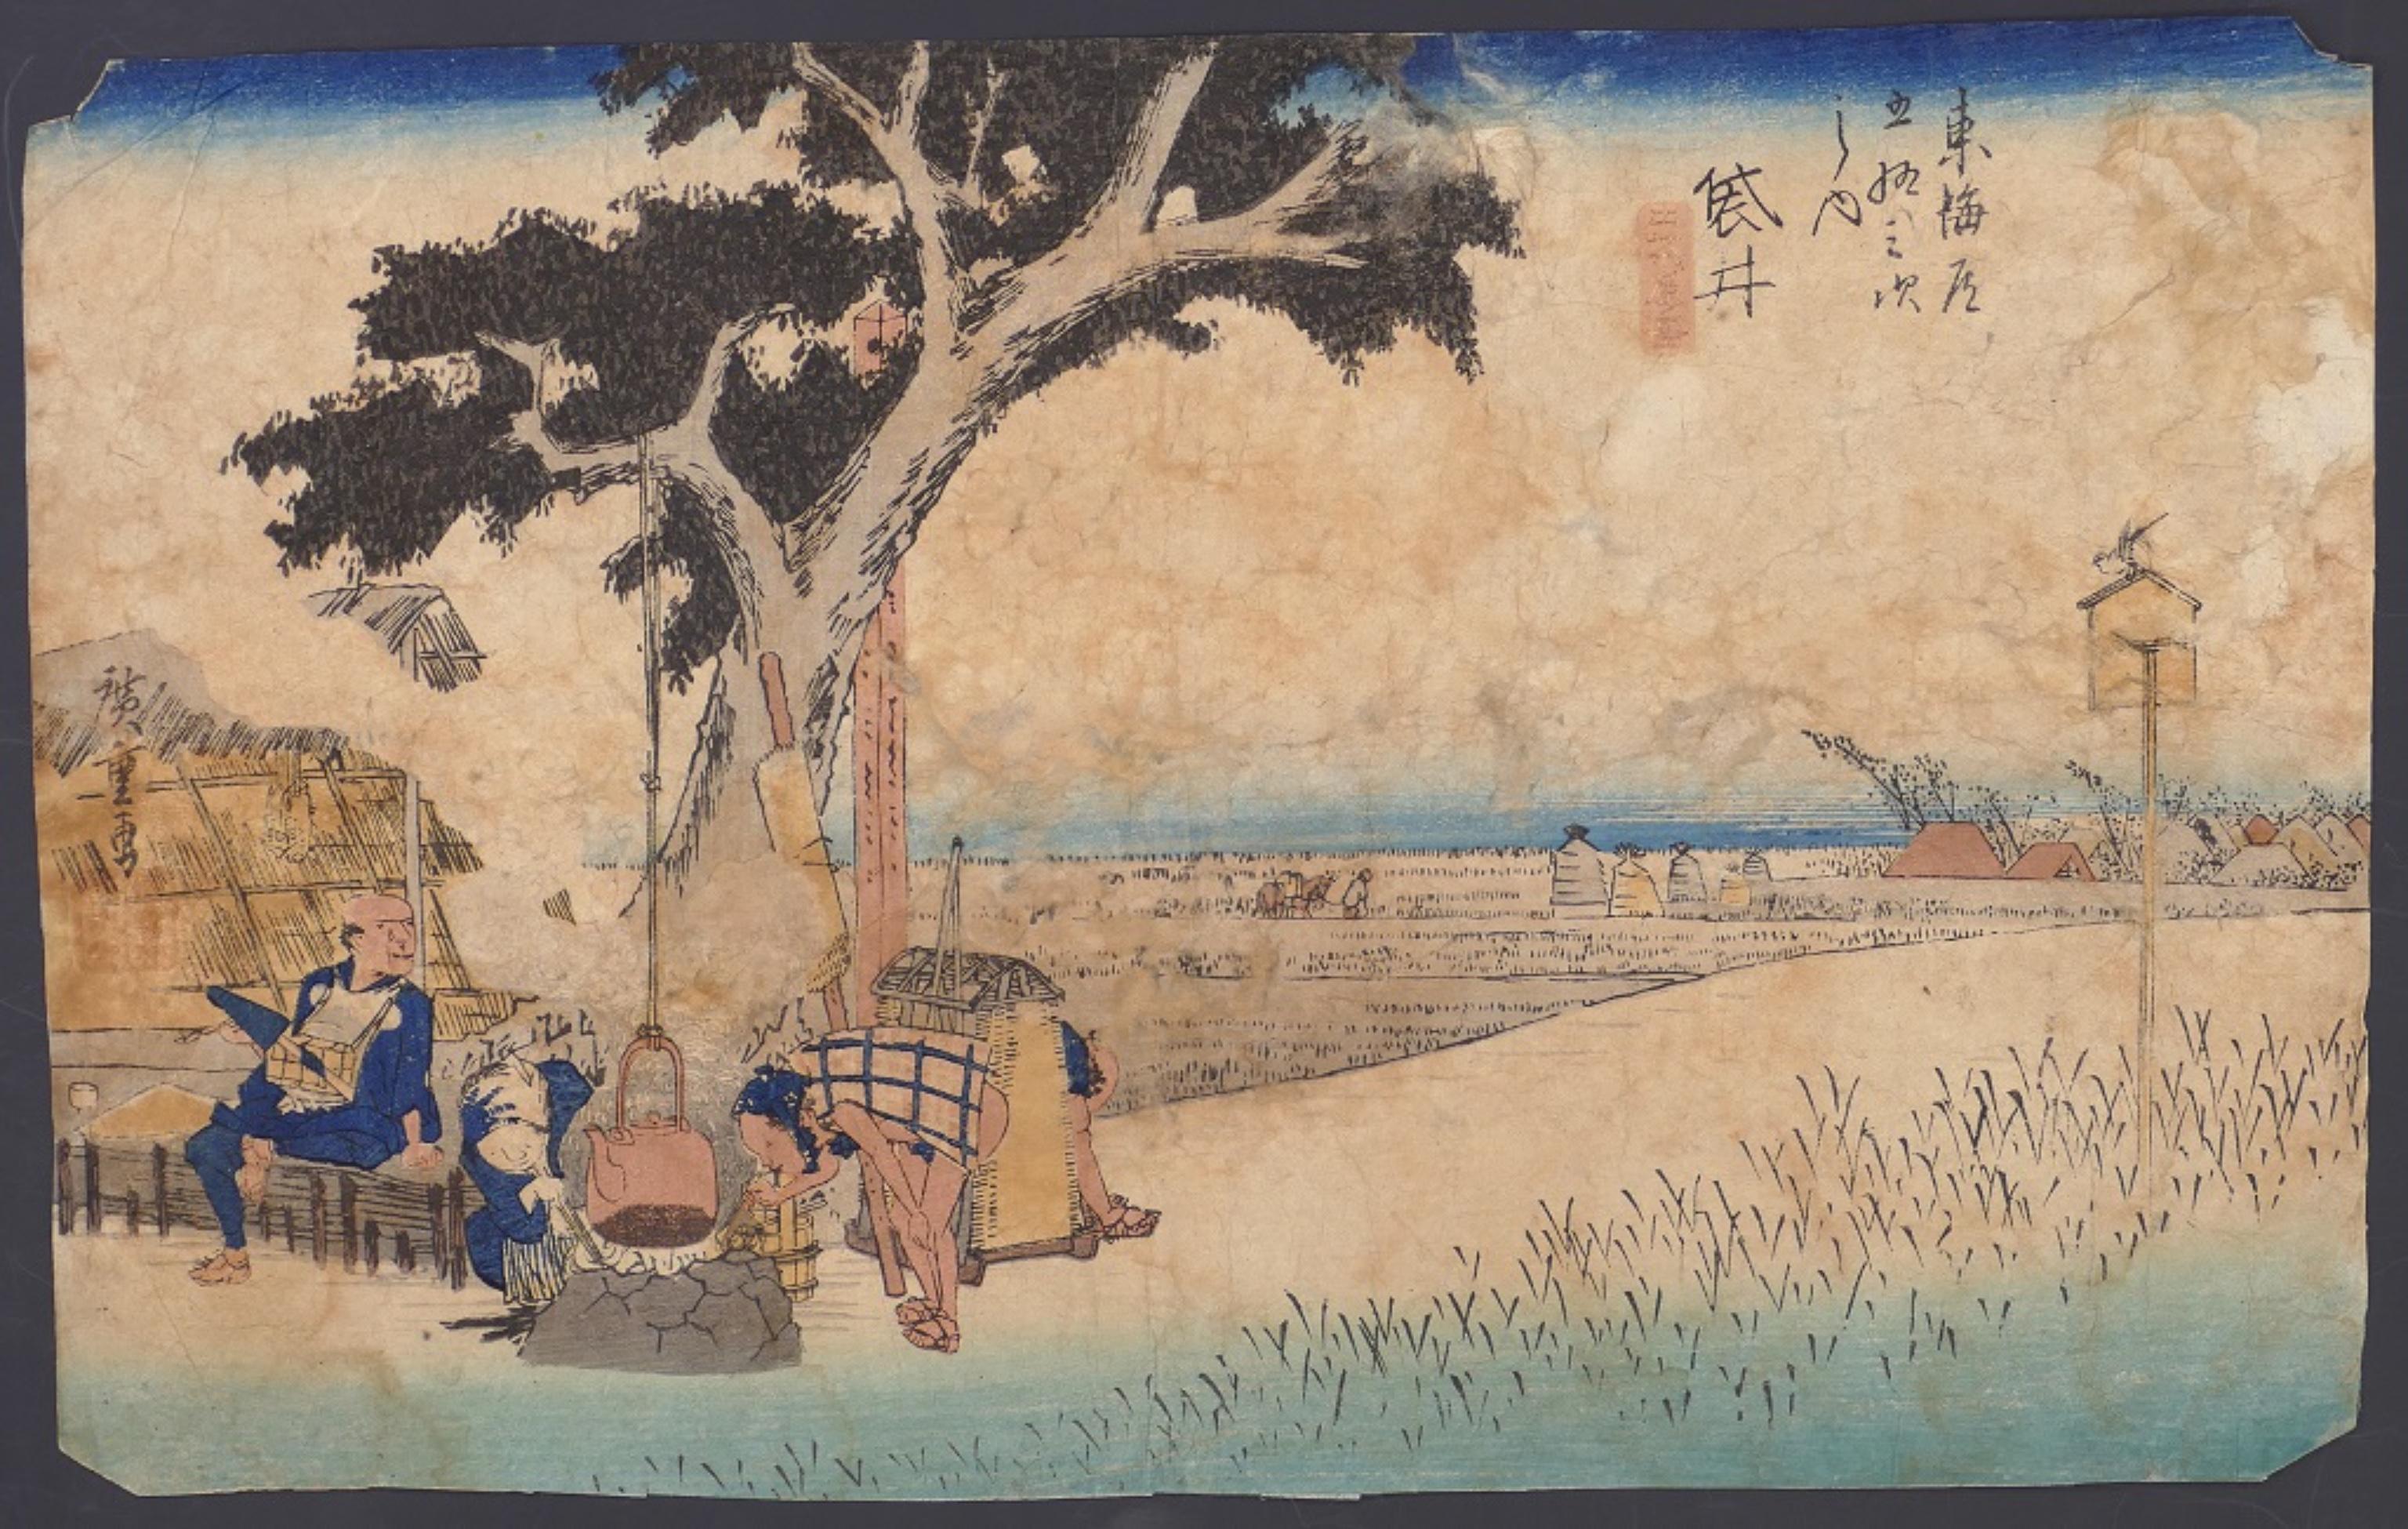 Fukuroi Dejaya No Zu (Un étal de thé en plein air à Fukuroi), est une magnifique gravure sur bois en couleur sur papier, la planche n. 28 de la série  Cinquante-trois stations le long de la route  le Tokaido (Tokaido Gosantsugi no uchi).

Cette